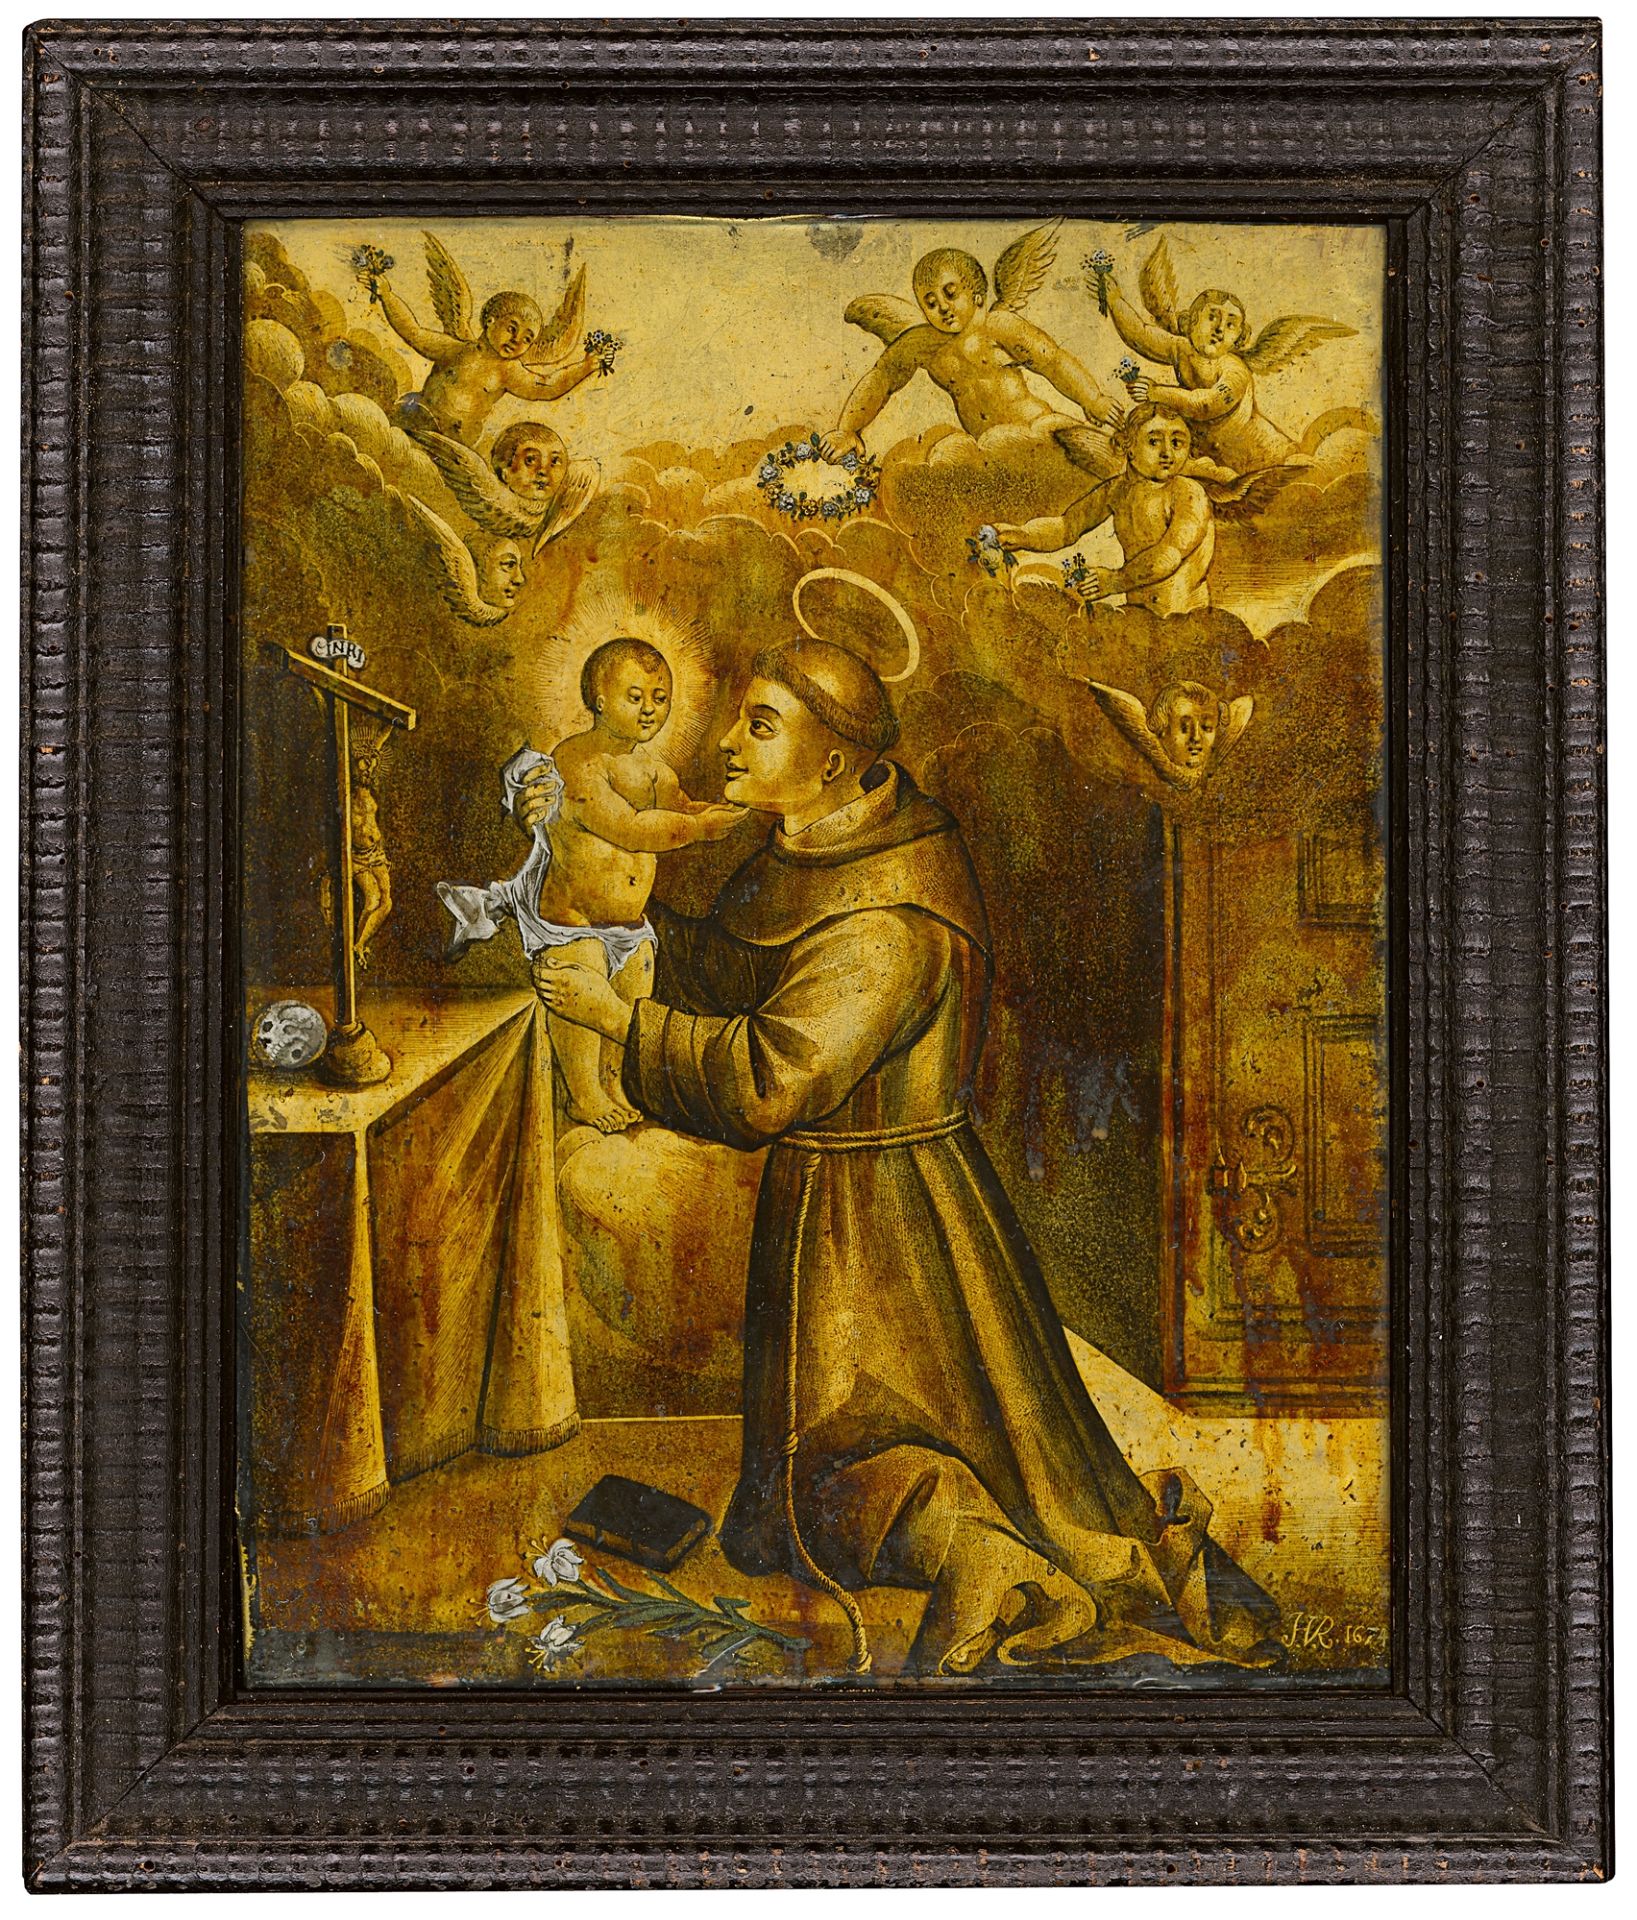 Heiliger Antonius von Padua und die Erscheinung des Jesuskindes, Böhmisch-österreichische Malschule,